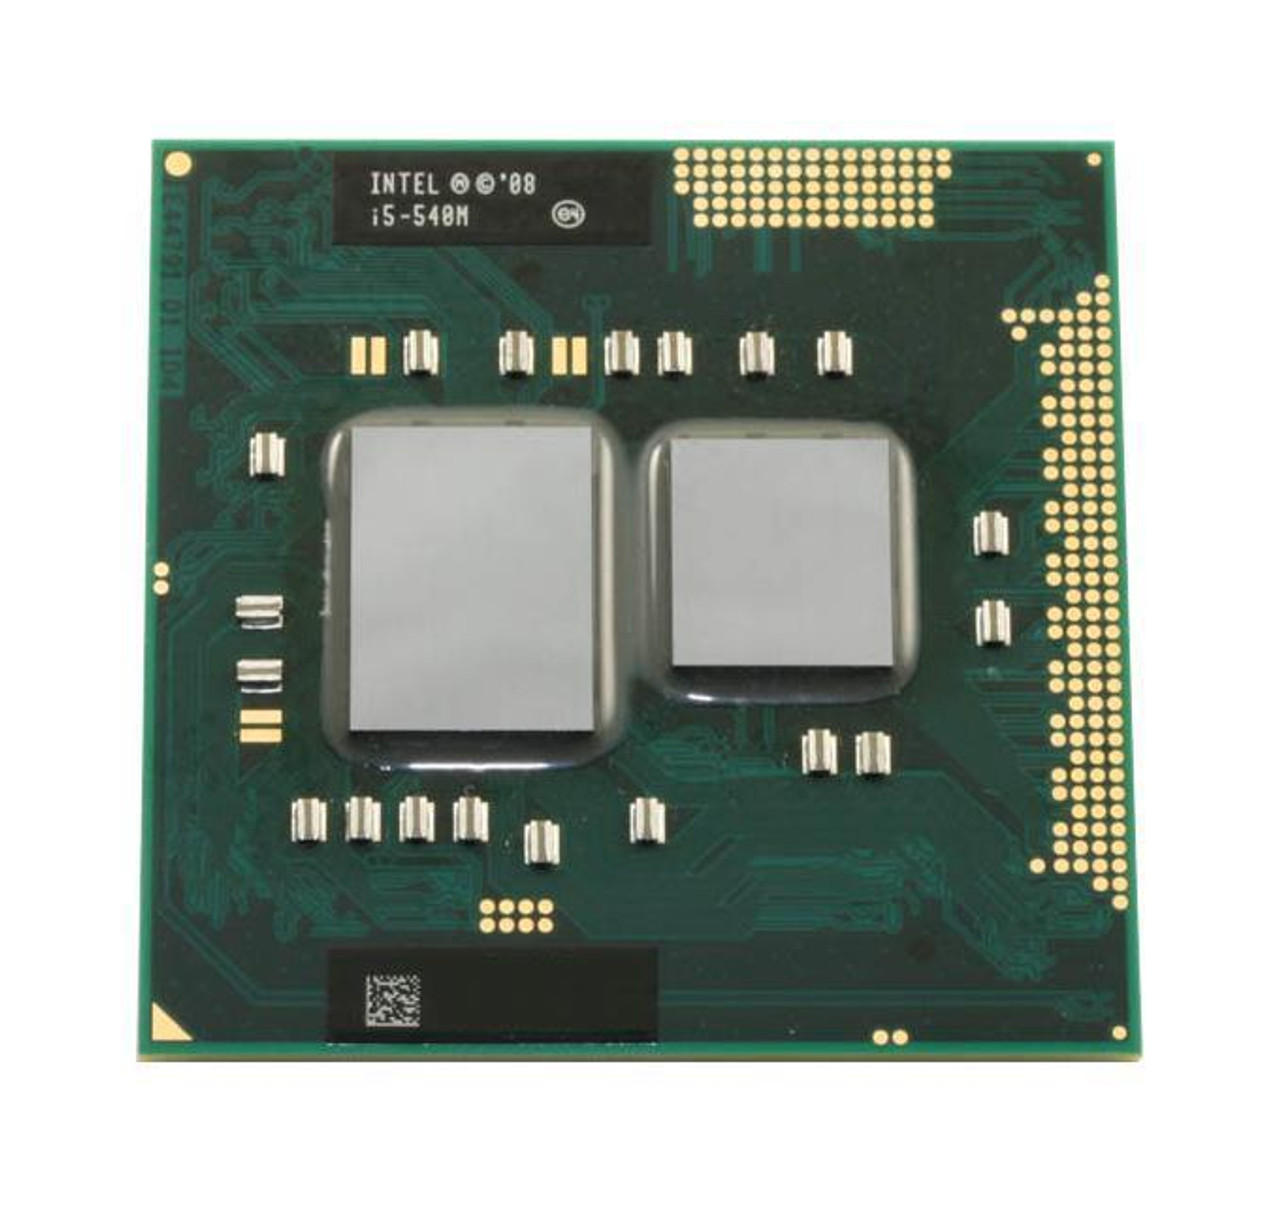 Dell 2.53GHz 2.50GT/s DMI 3MB L3 Cache Intel Core i5-540M Dual-Core Mobile Processor Upgrade